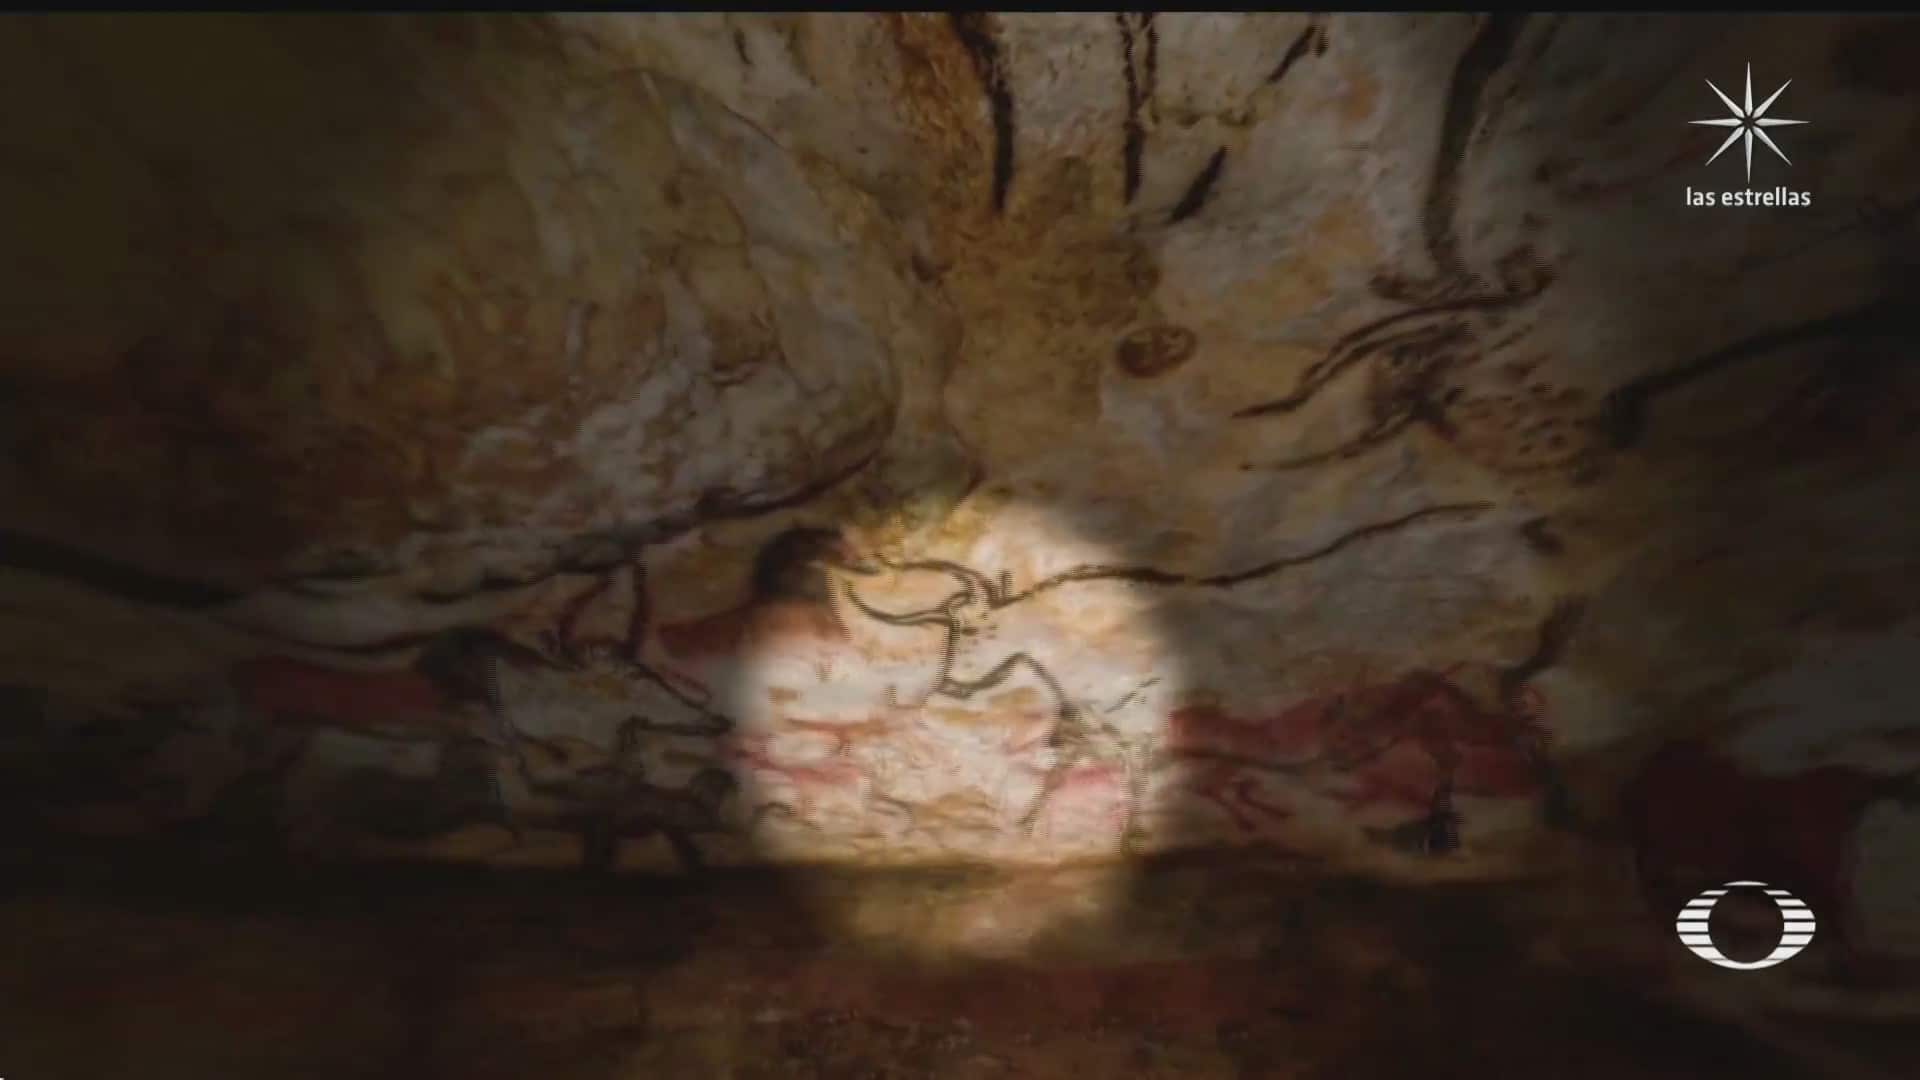 pinturas rupestres en cuevas de francia podran visitarse virtualmente